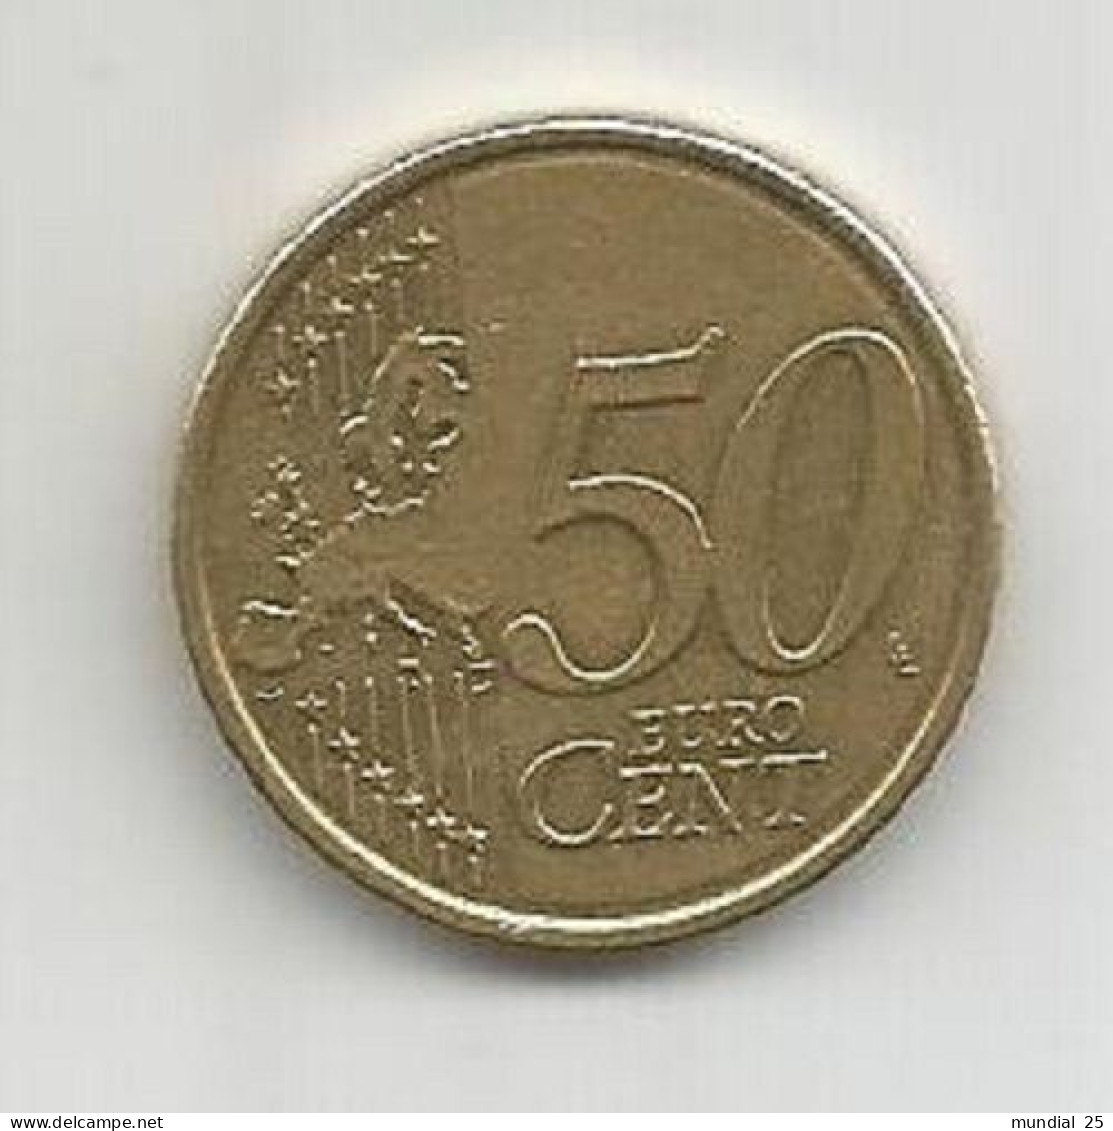 BELGIUM 50 EURO CENT 2012 - België